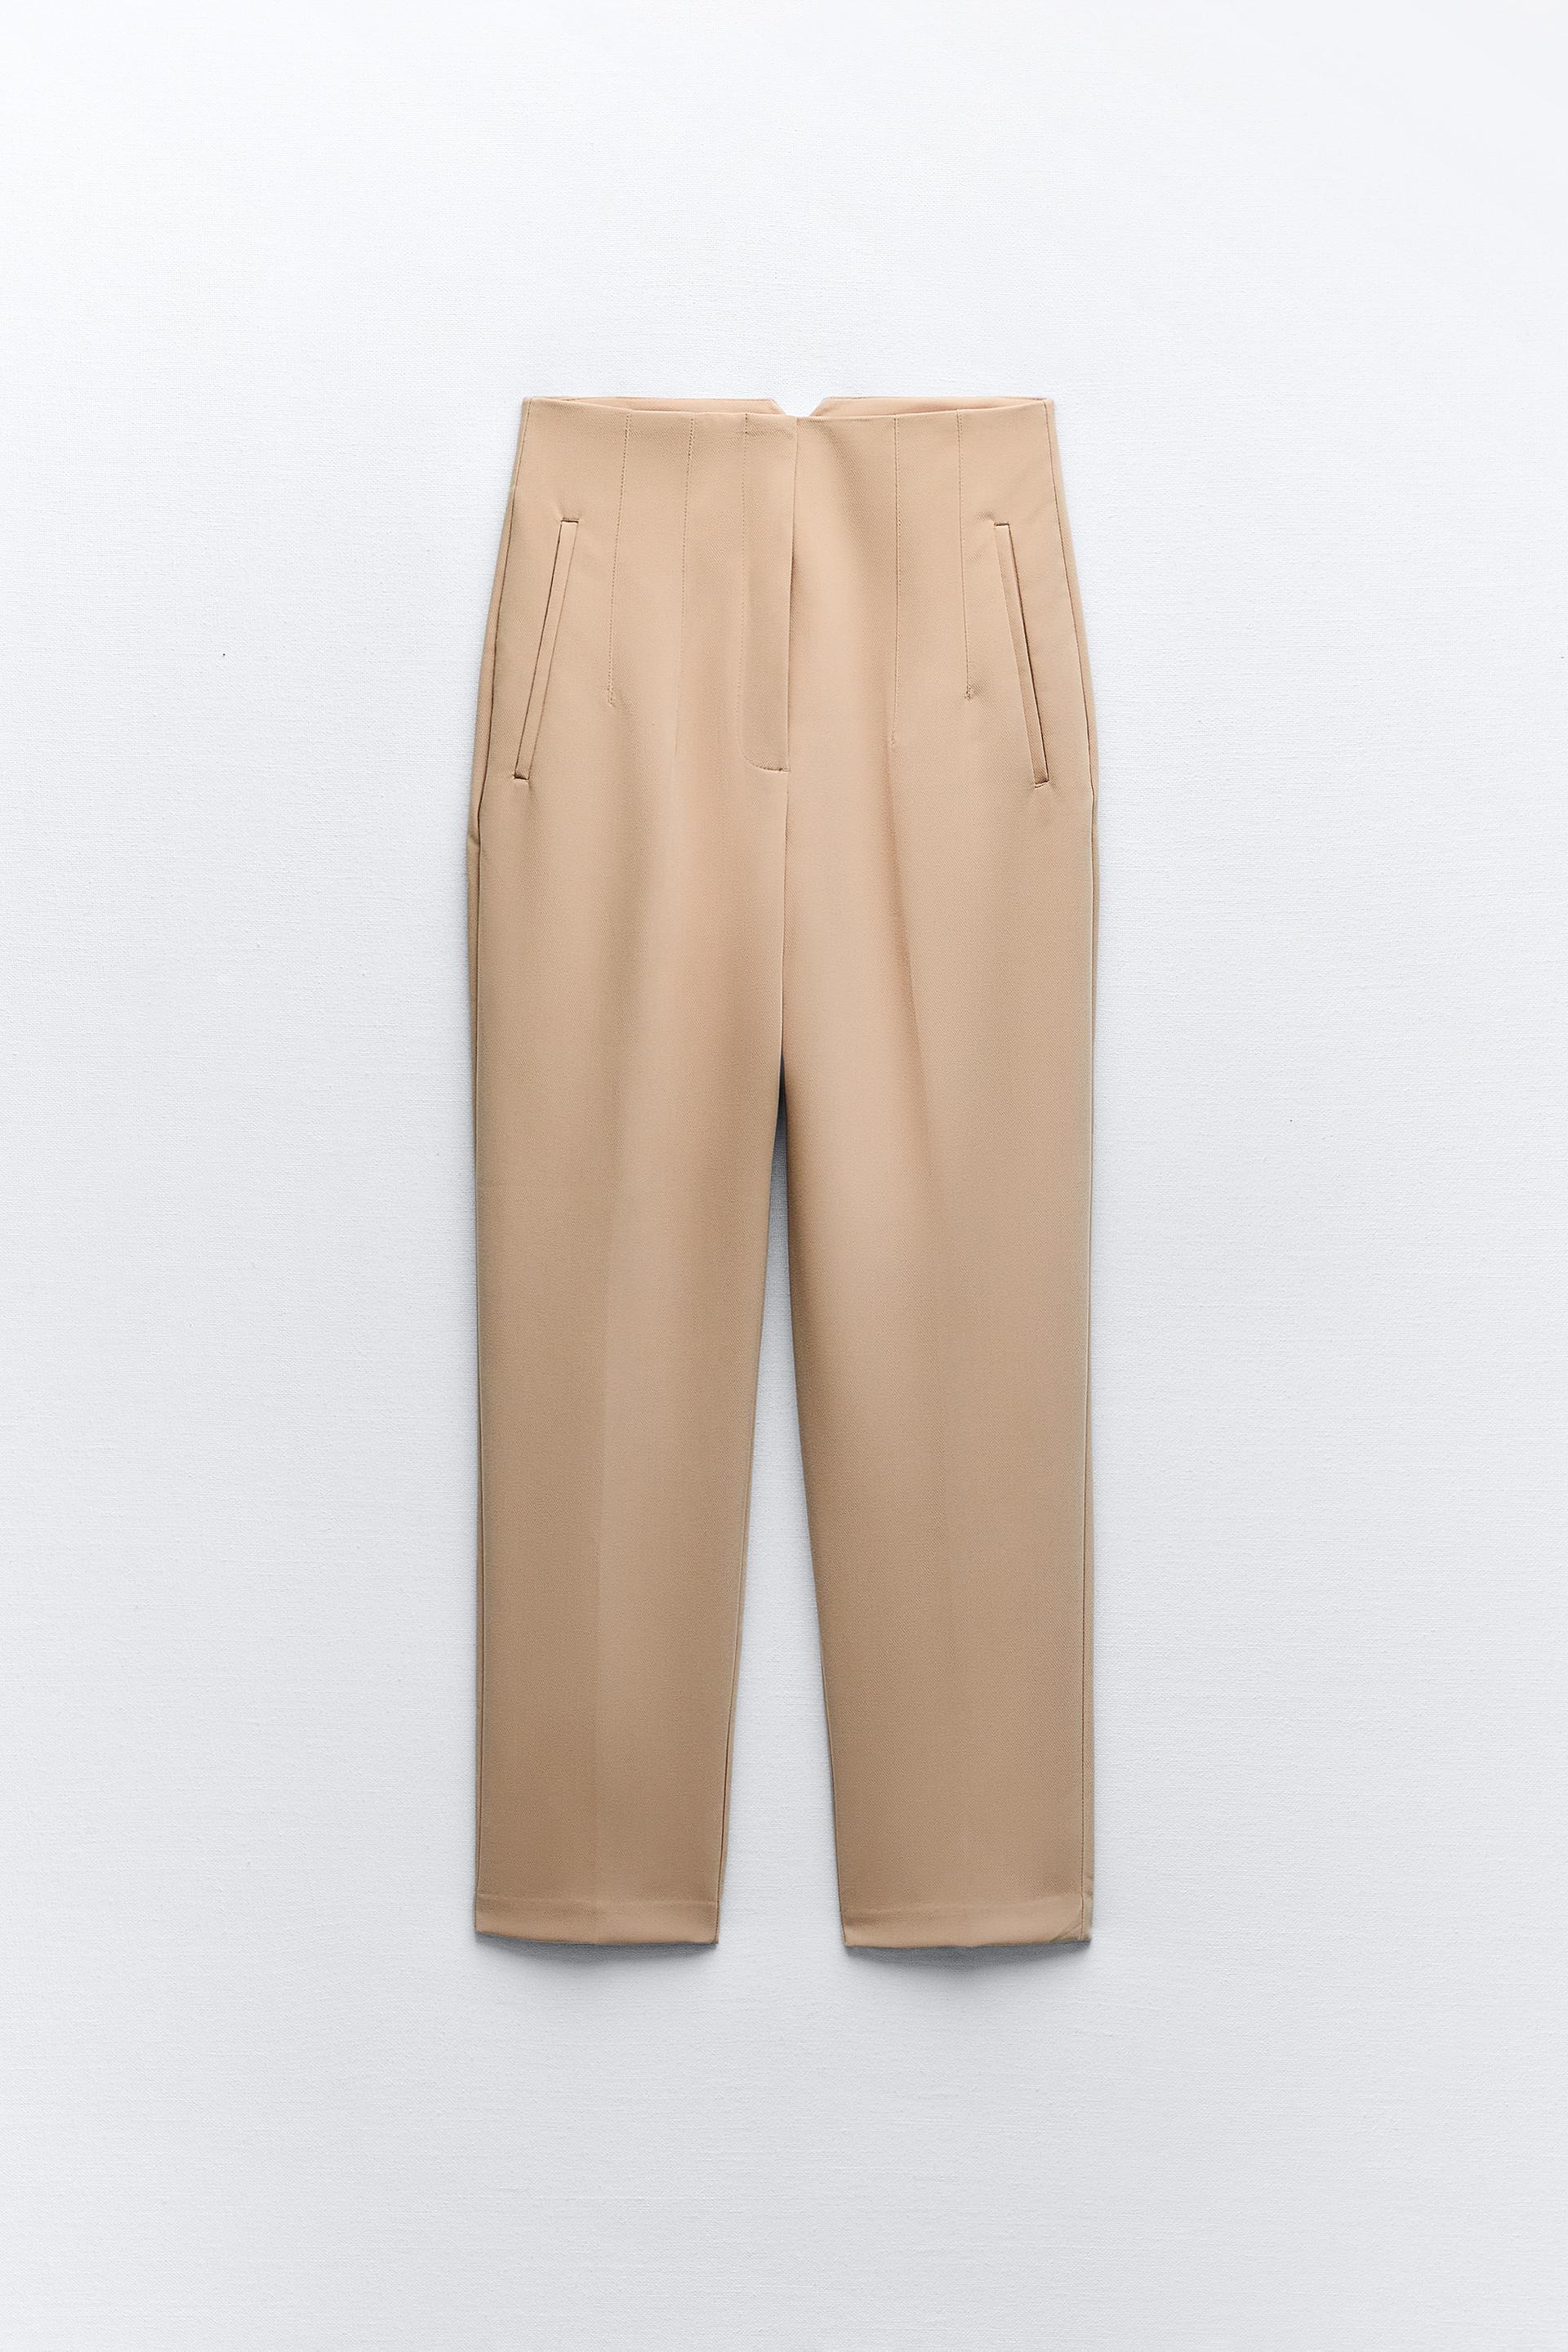 Zara high-waist trousers - Steffy's Style  Stil kıyafetler, Tarz moda,  Moda kıyafetler